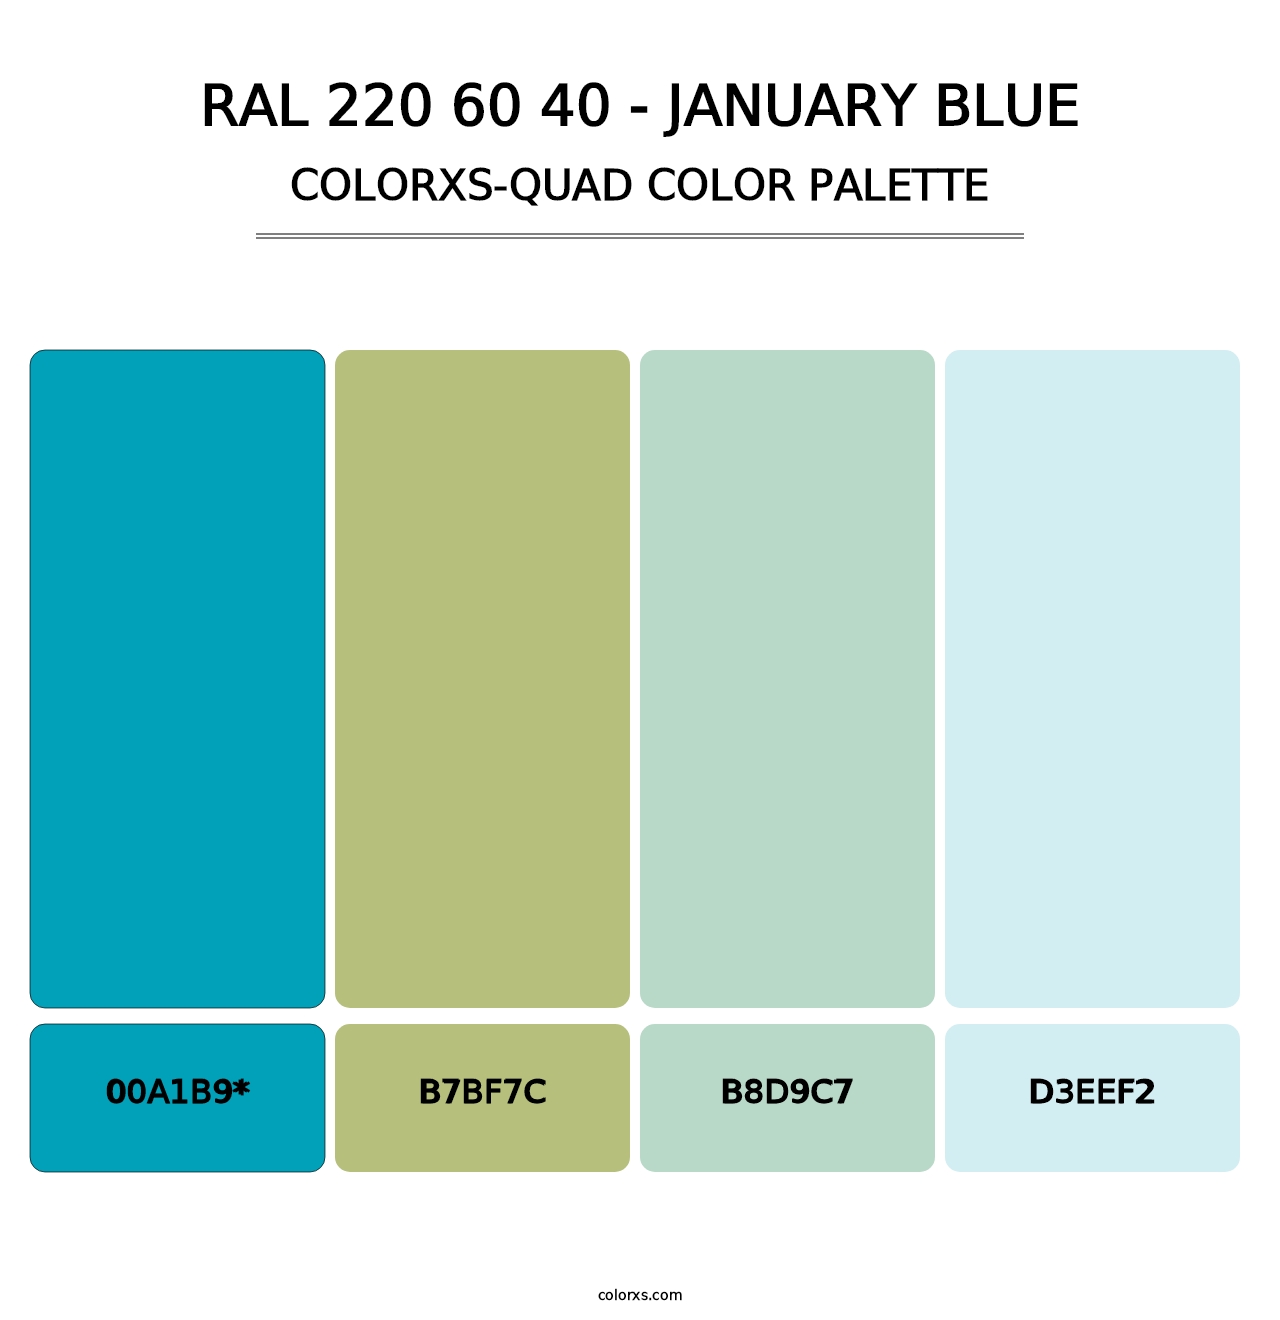 RAL 220 60 40 - January Blue - Colorxs Quad Palette